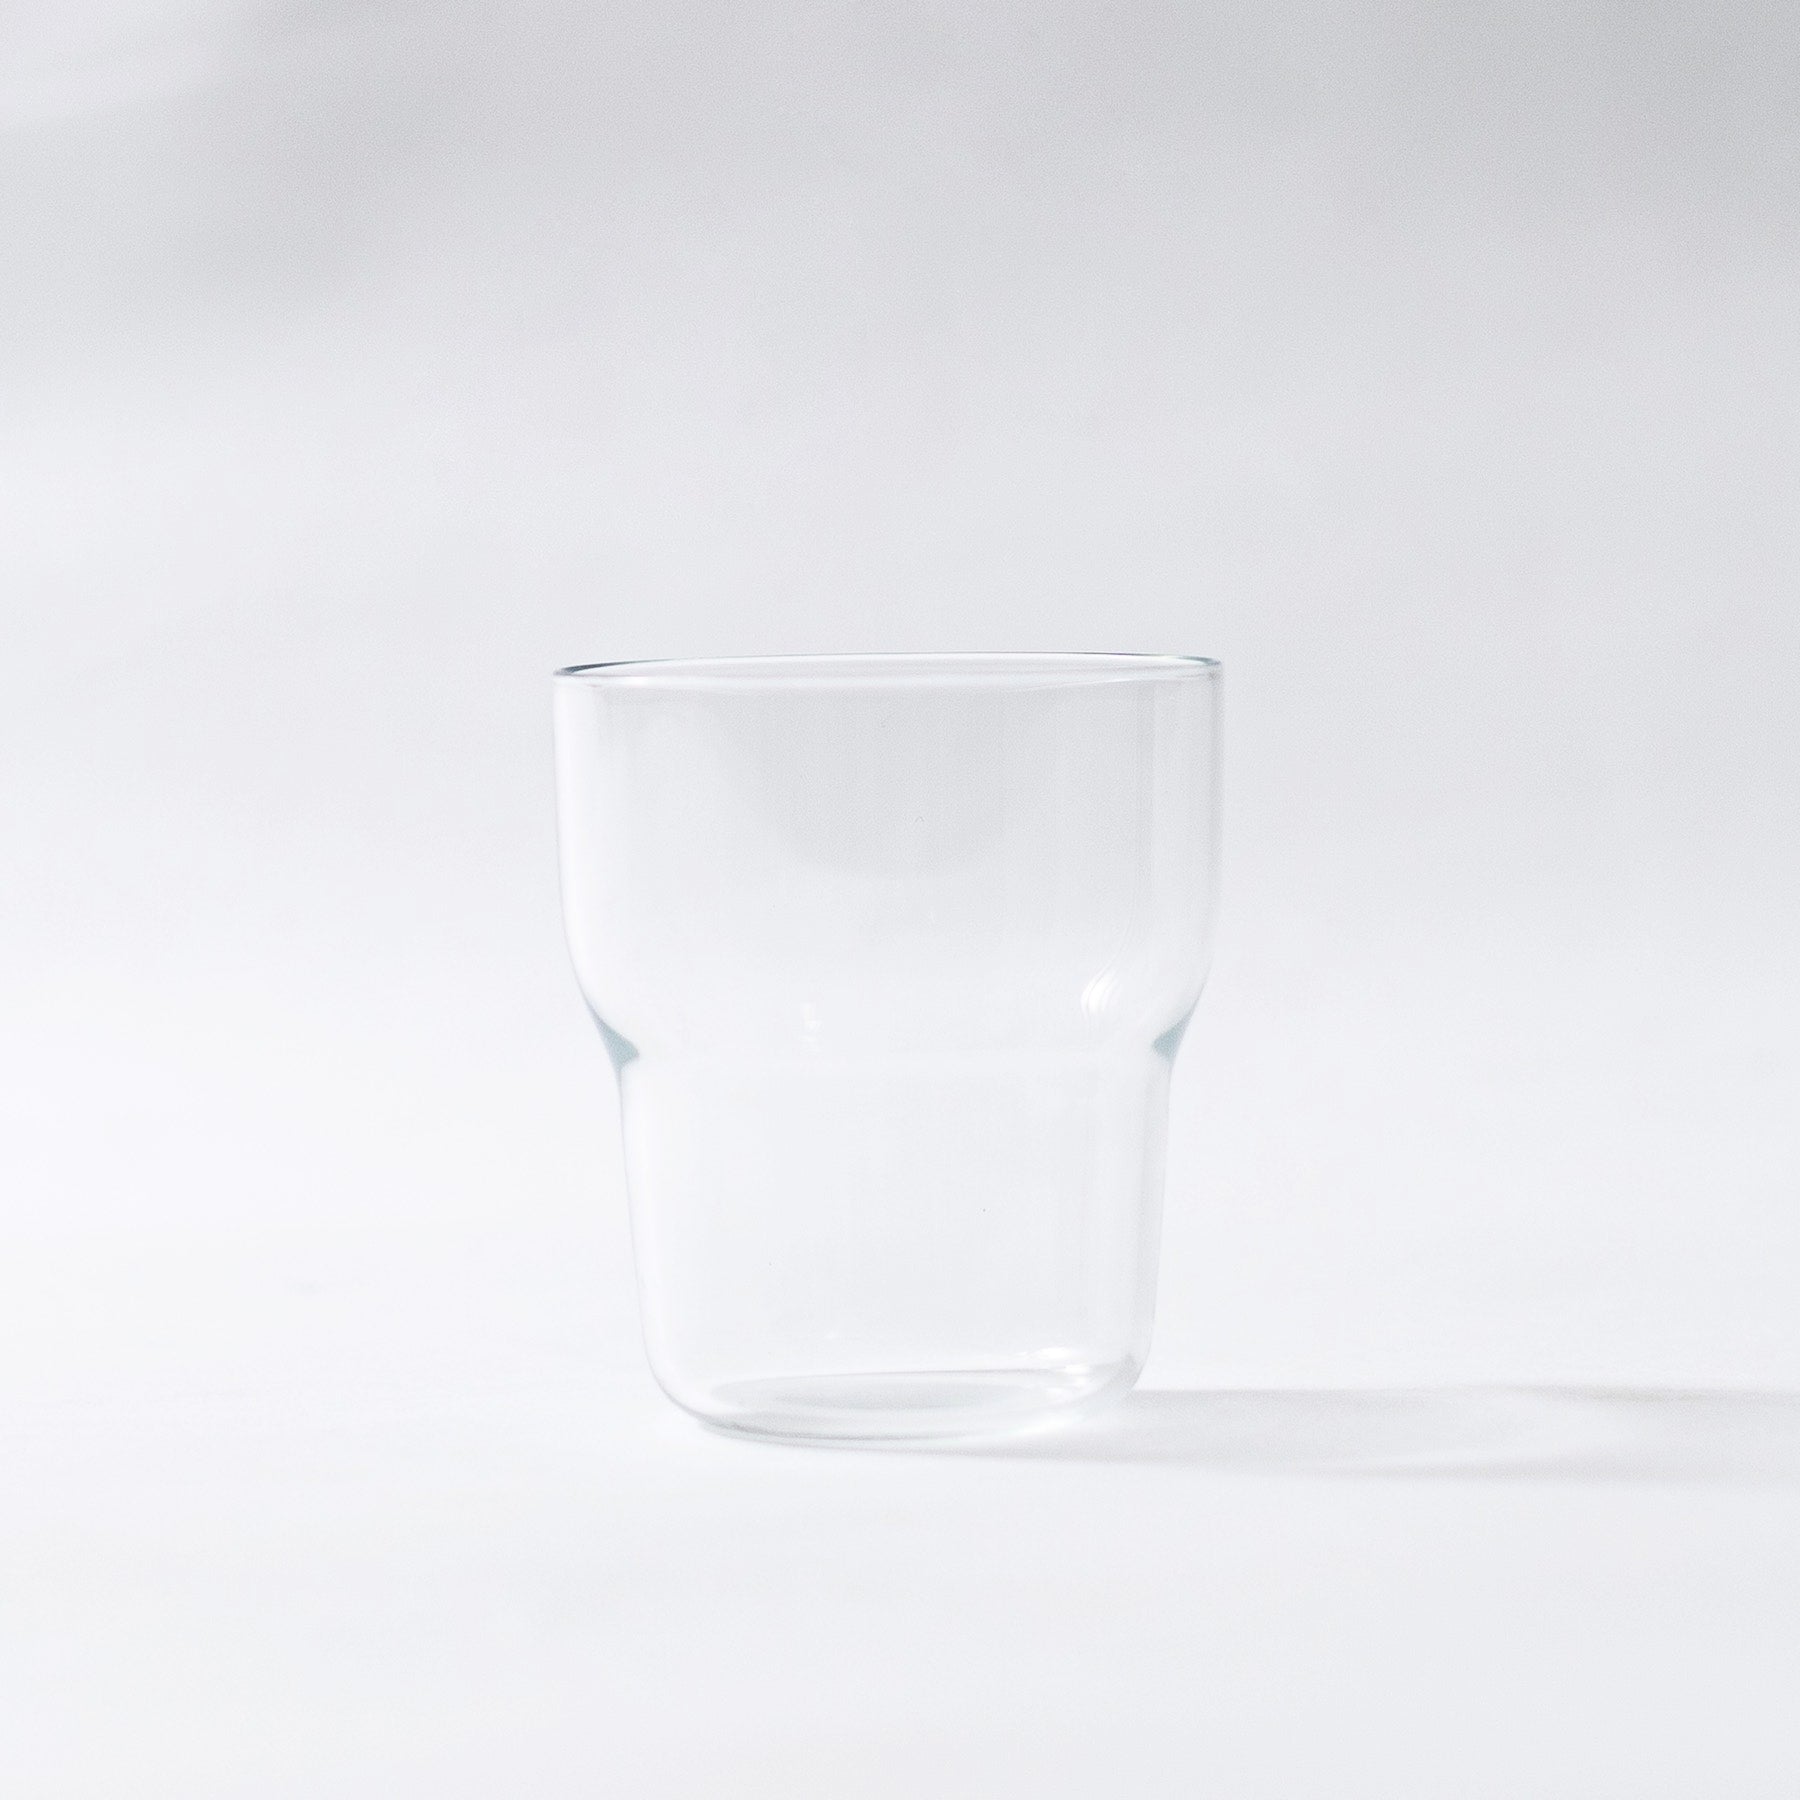 hya0001 - Glass Cup 250ml